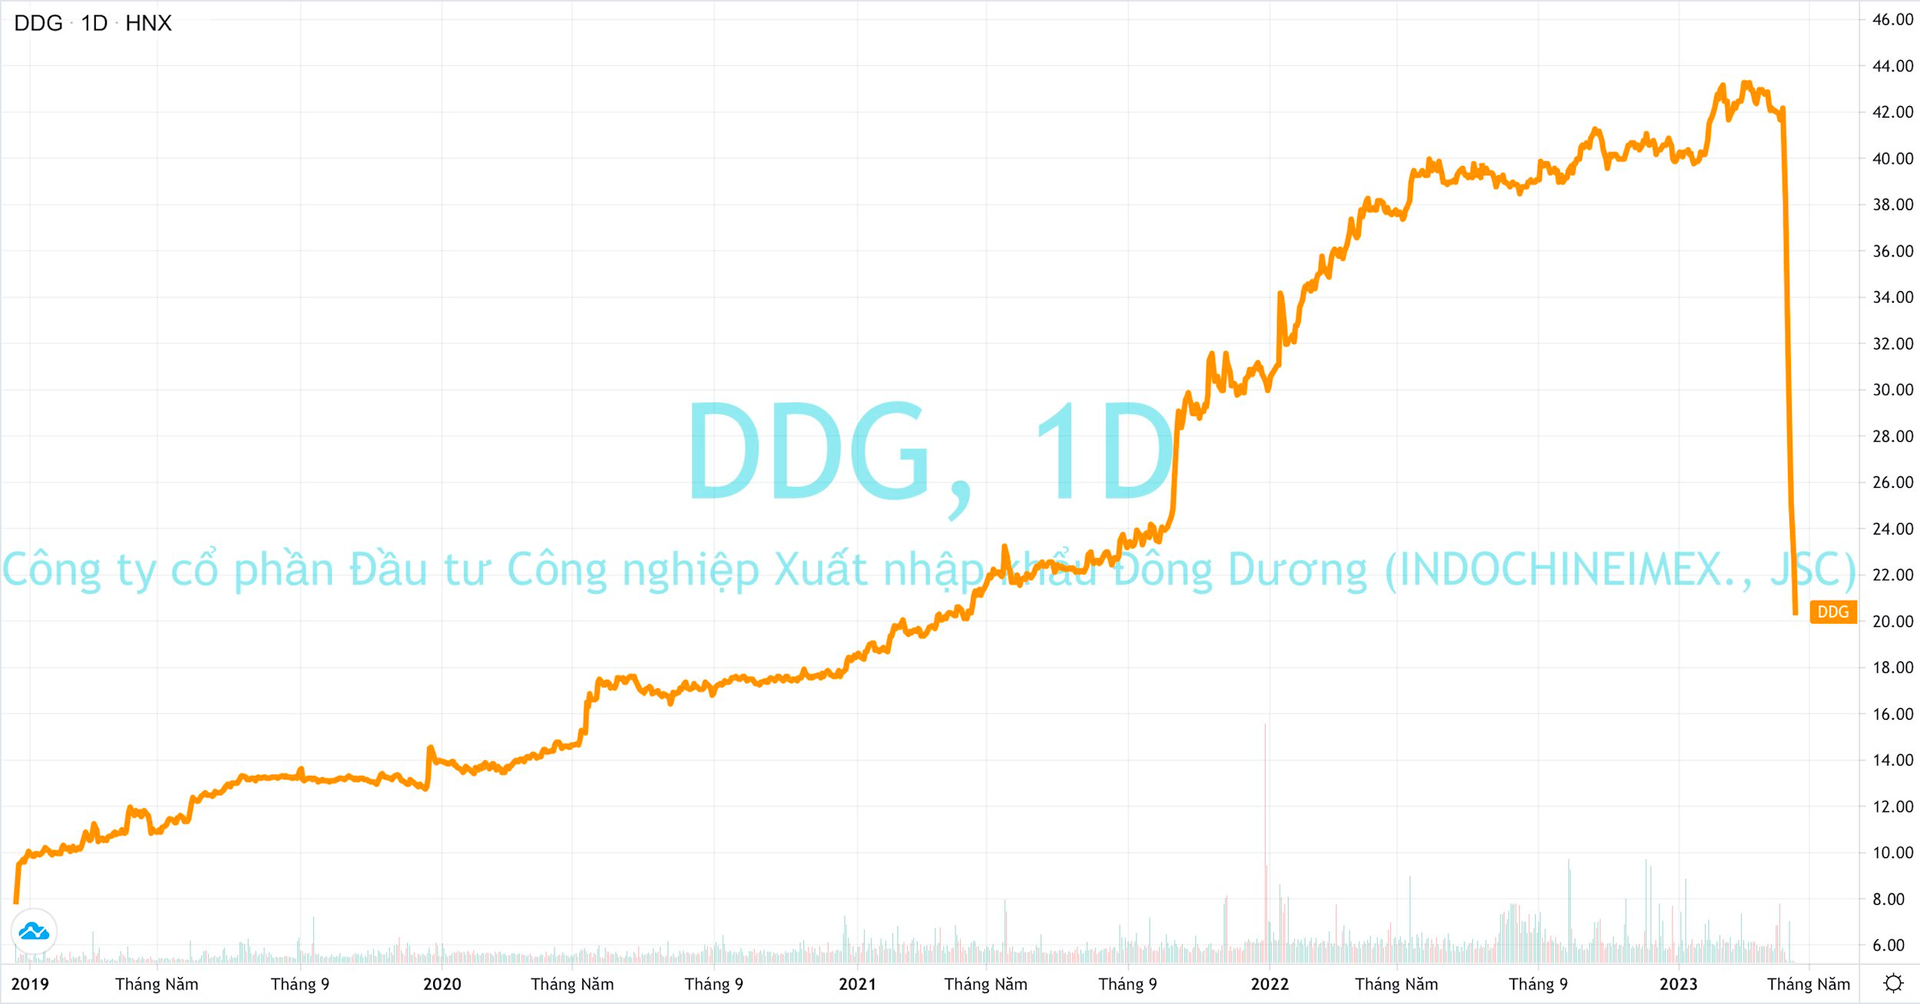 Cổ phiếu DDG chia đôi, vốn hóa 